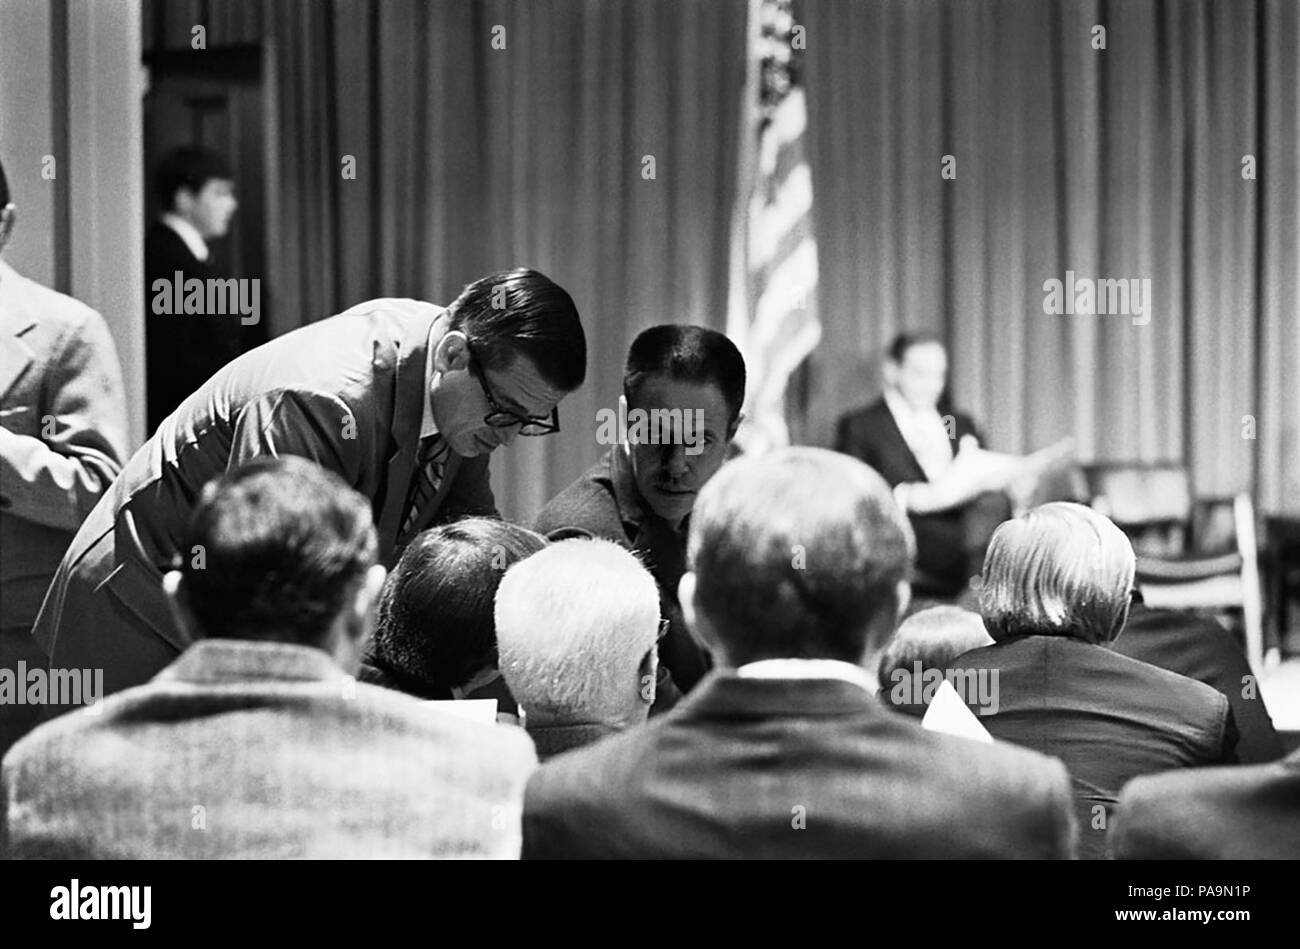 Charles W. Colson, avocat à la Maison Blanche, et H.R. Haldeman, chef de cabinet présidentiel, le 15 novembre 1972, pendant la période d'enquête du Watergate et peu après la réélection du président Richard M. Nixon. (ÉTATS-UNIS) Banque D'Images